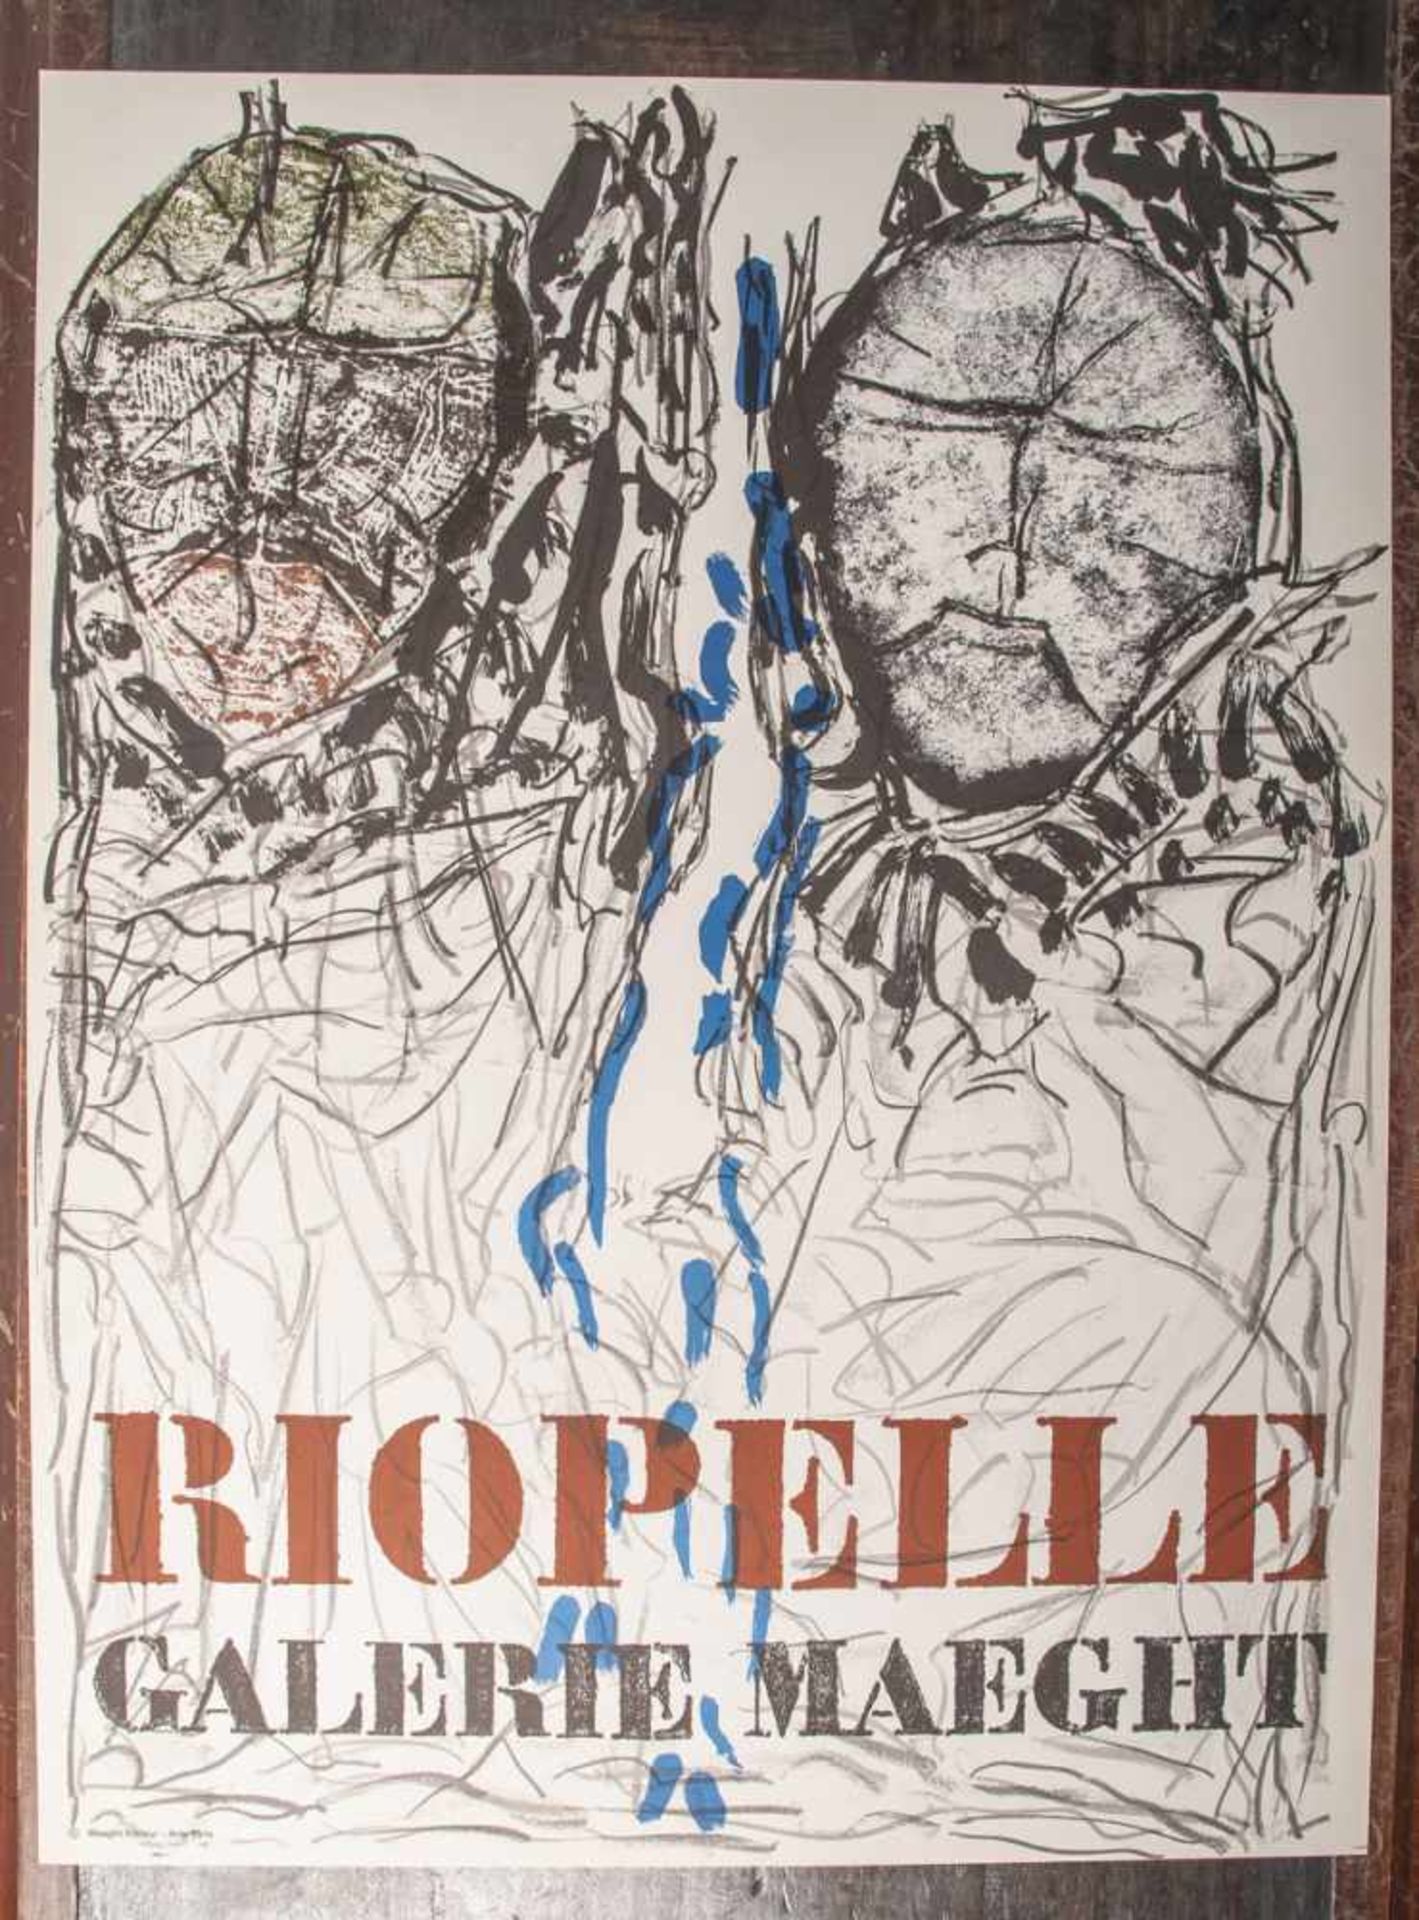 Riopelle, Jean-Paul (1923 - 2002), Ausstellungsplakat für Riopelle-Ausstellung in derGalerie